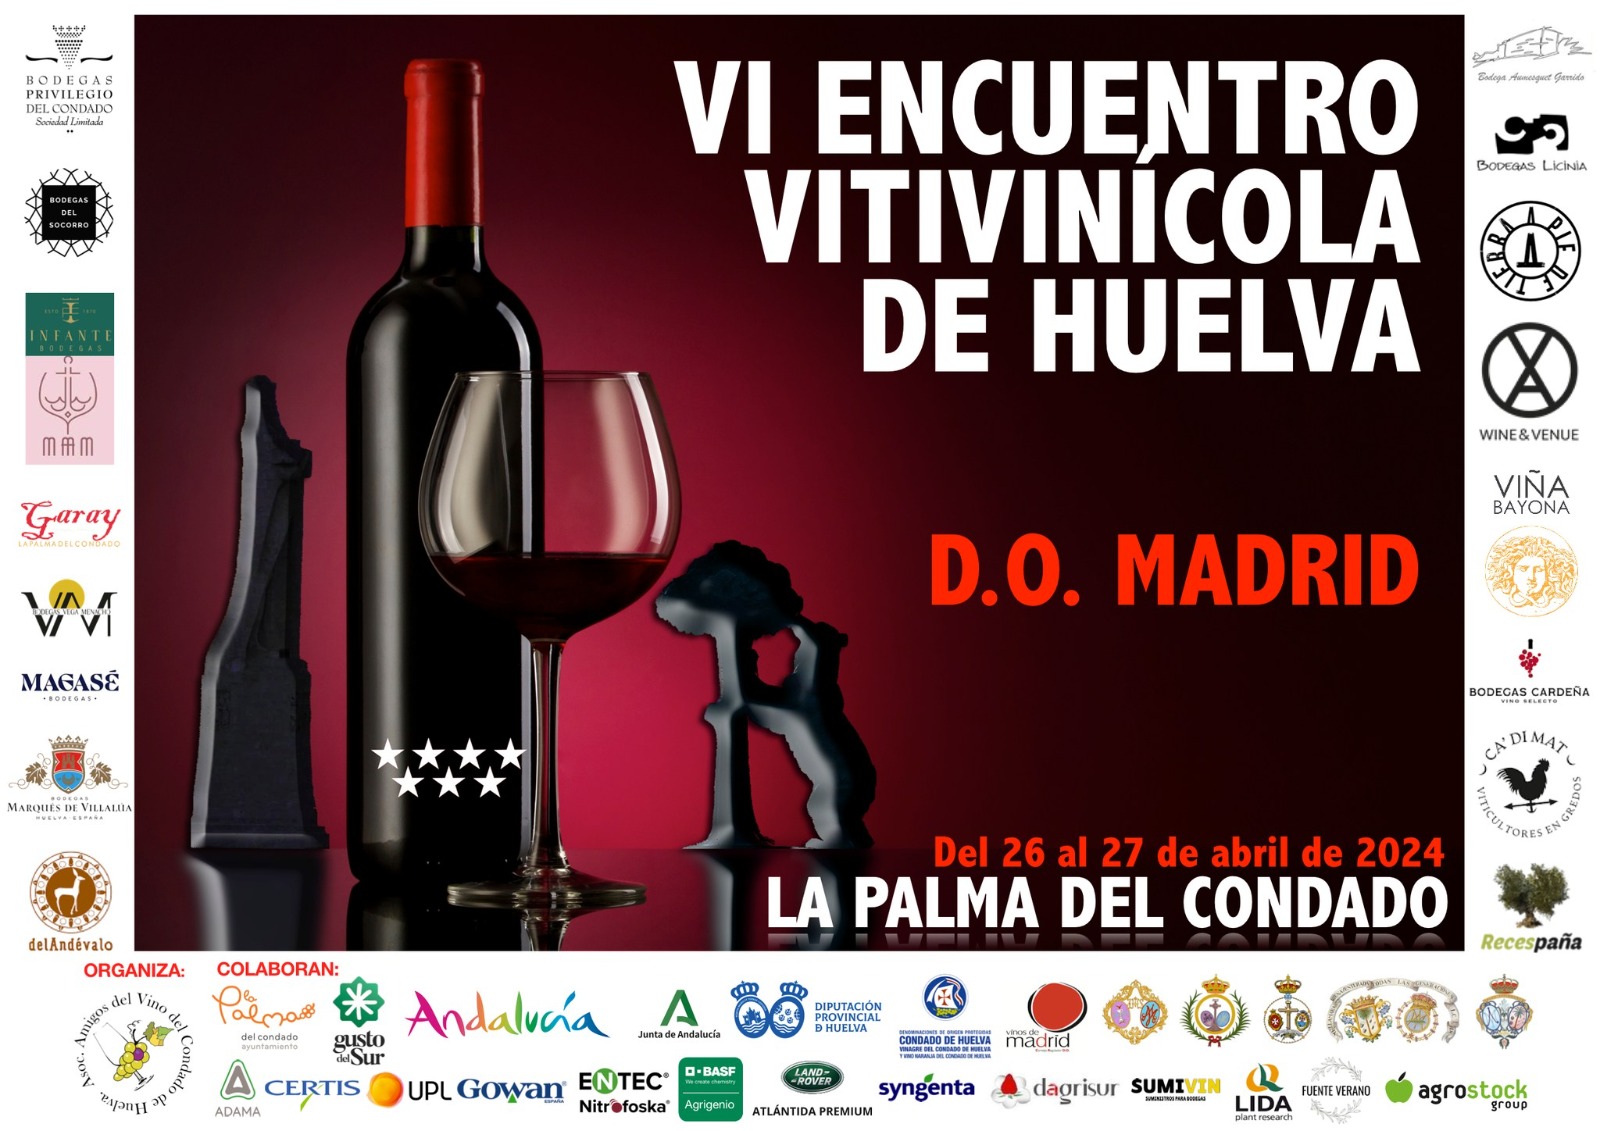 Este fin de semana tendrá lugar el VI Encuentro Vitivinícola de Huelva en la Plaza de España de La Palma